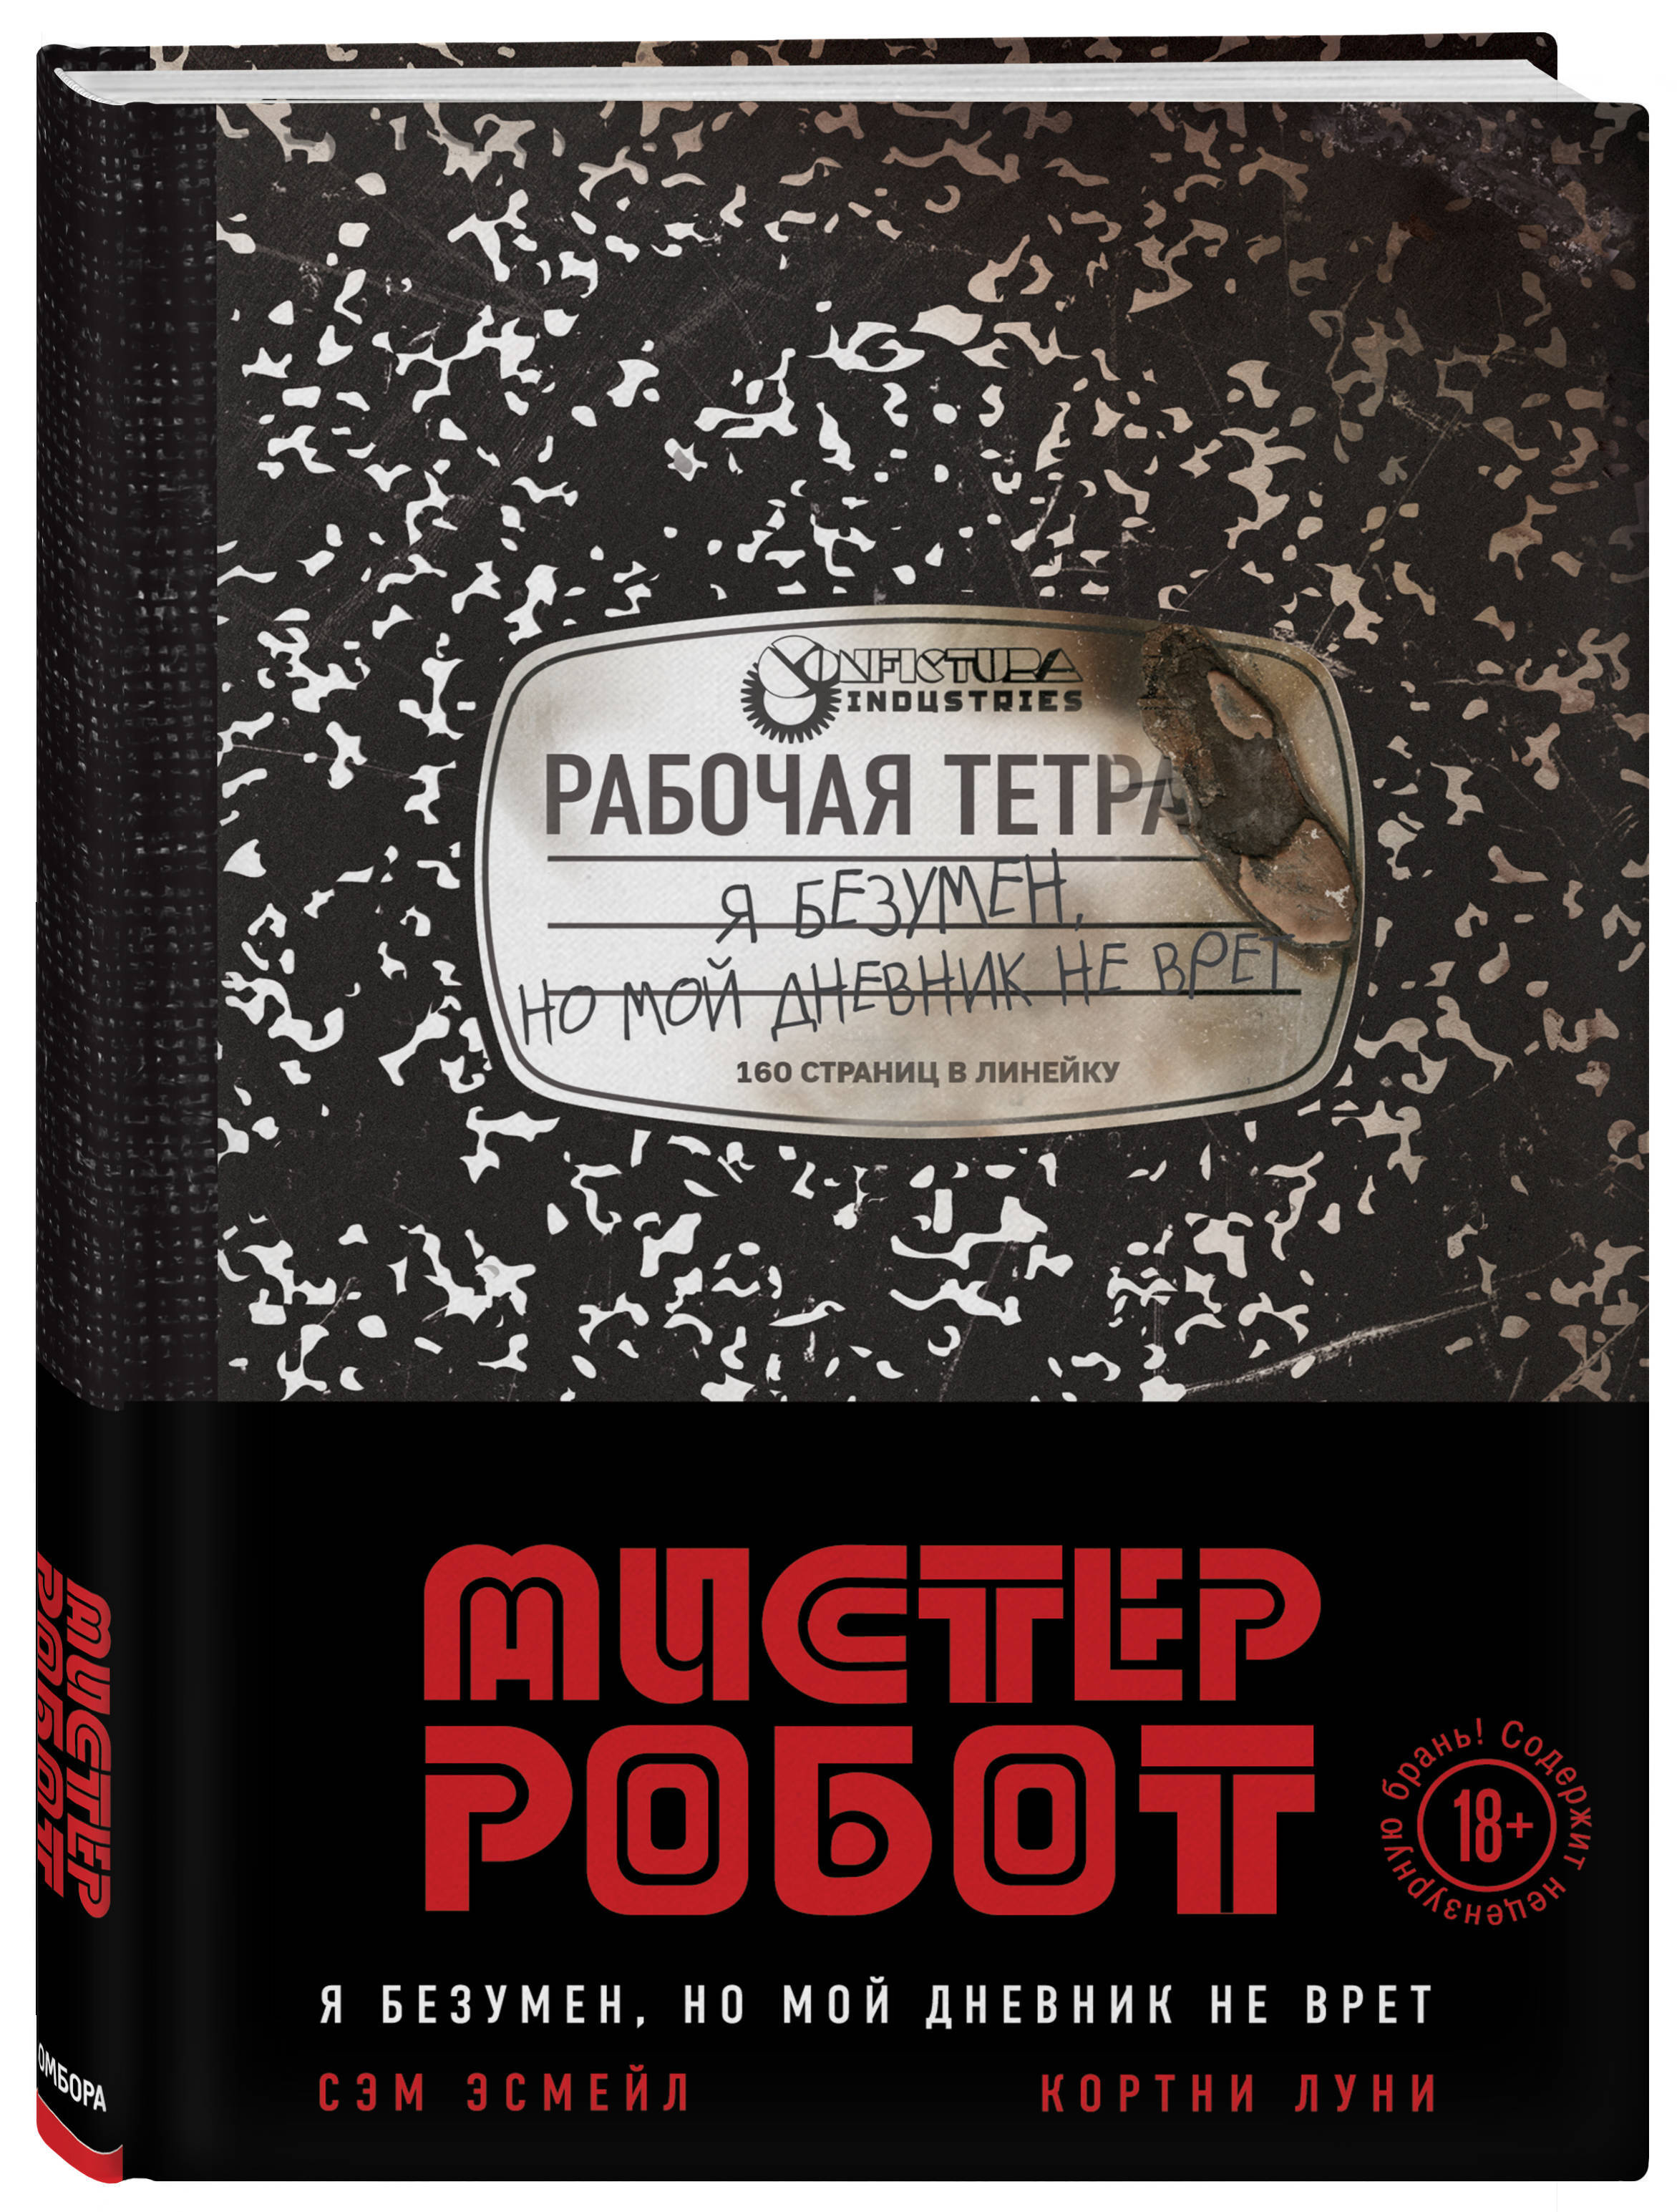 Обложка ври. Мистер робот: я безумен, но мой дневник не врет. Мистер Фог обложка книги. Русские обложки ври.